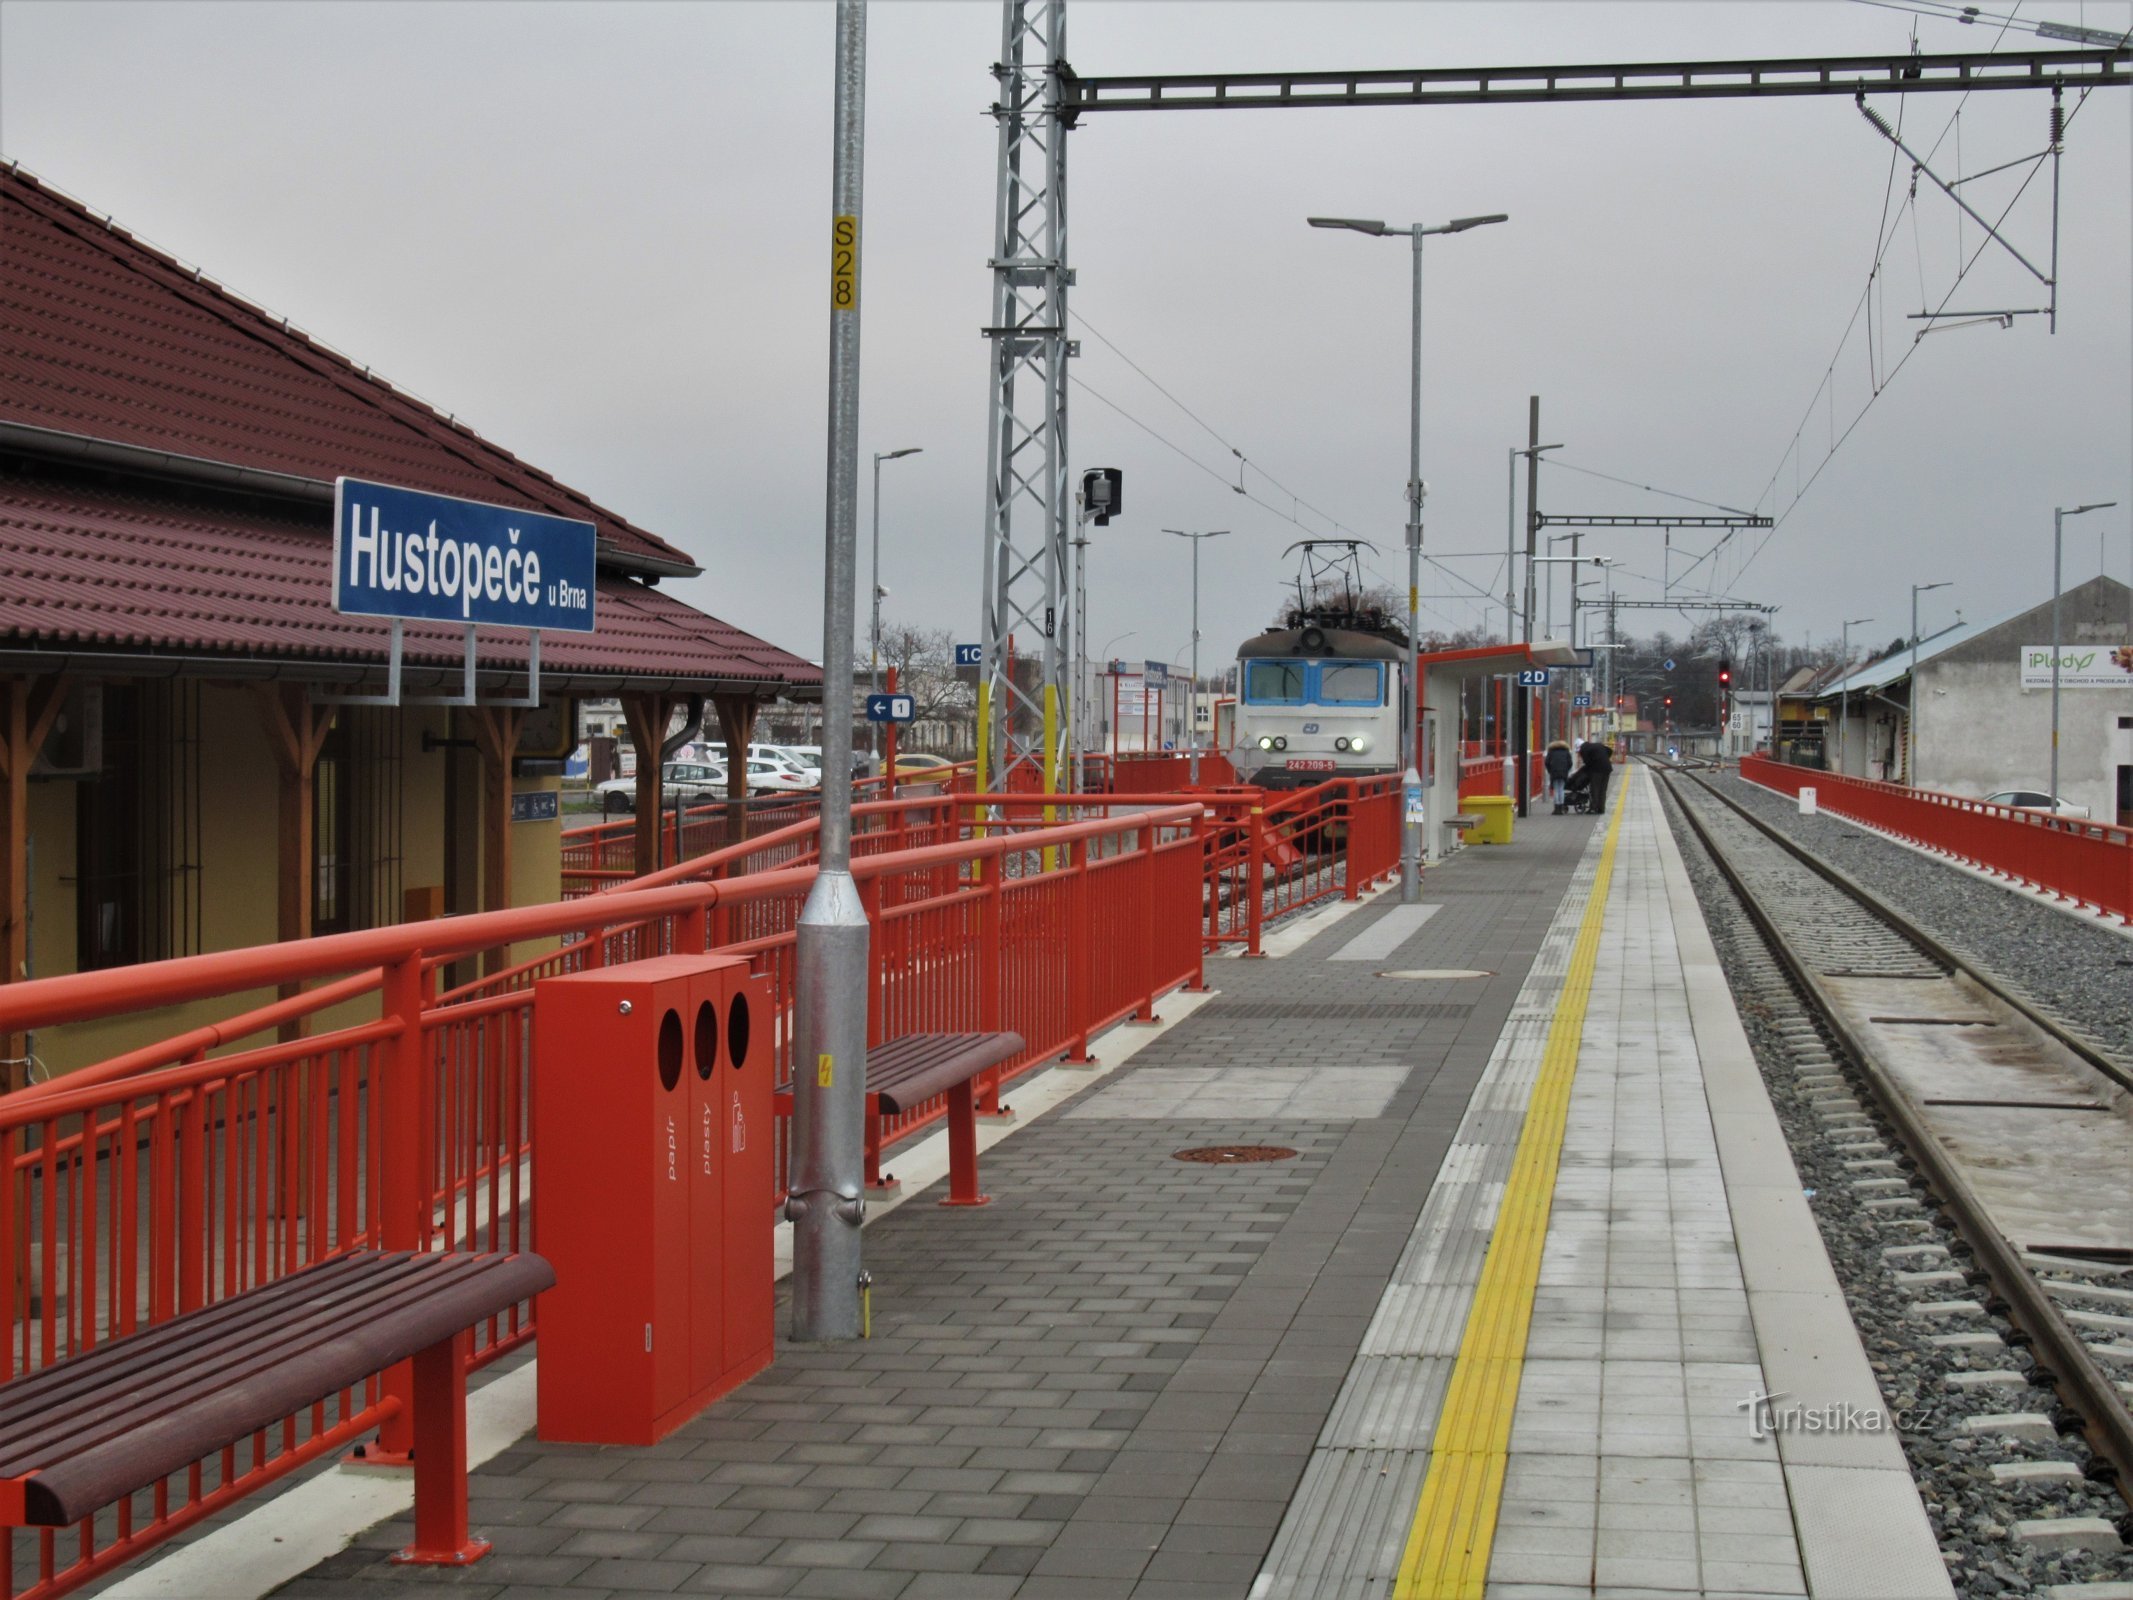 Stație electrificată recent deschisă, cu sosire de tren în decembrie 2020